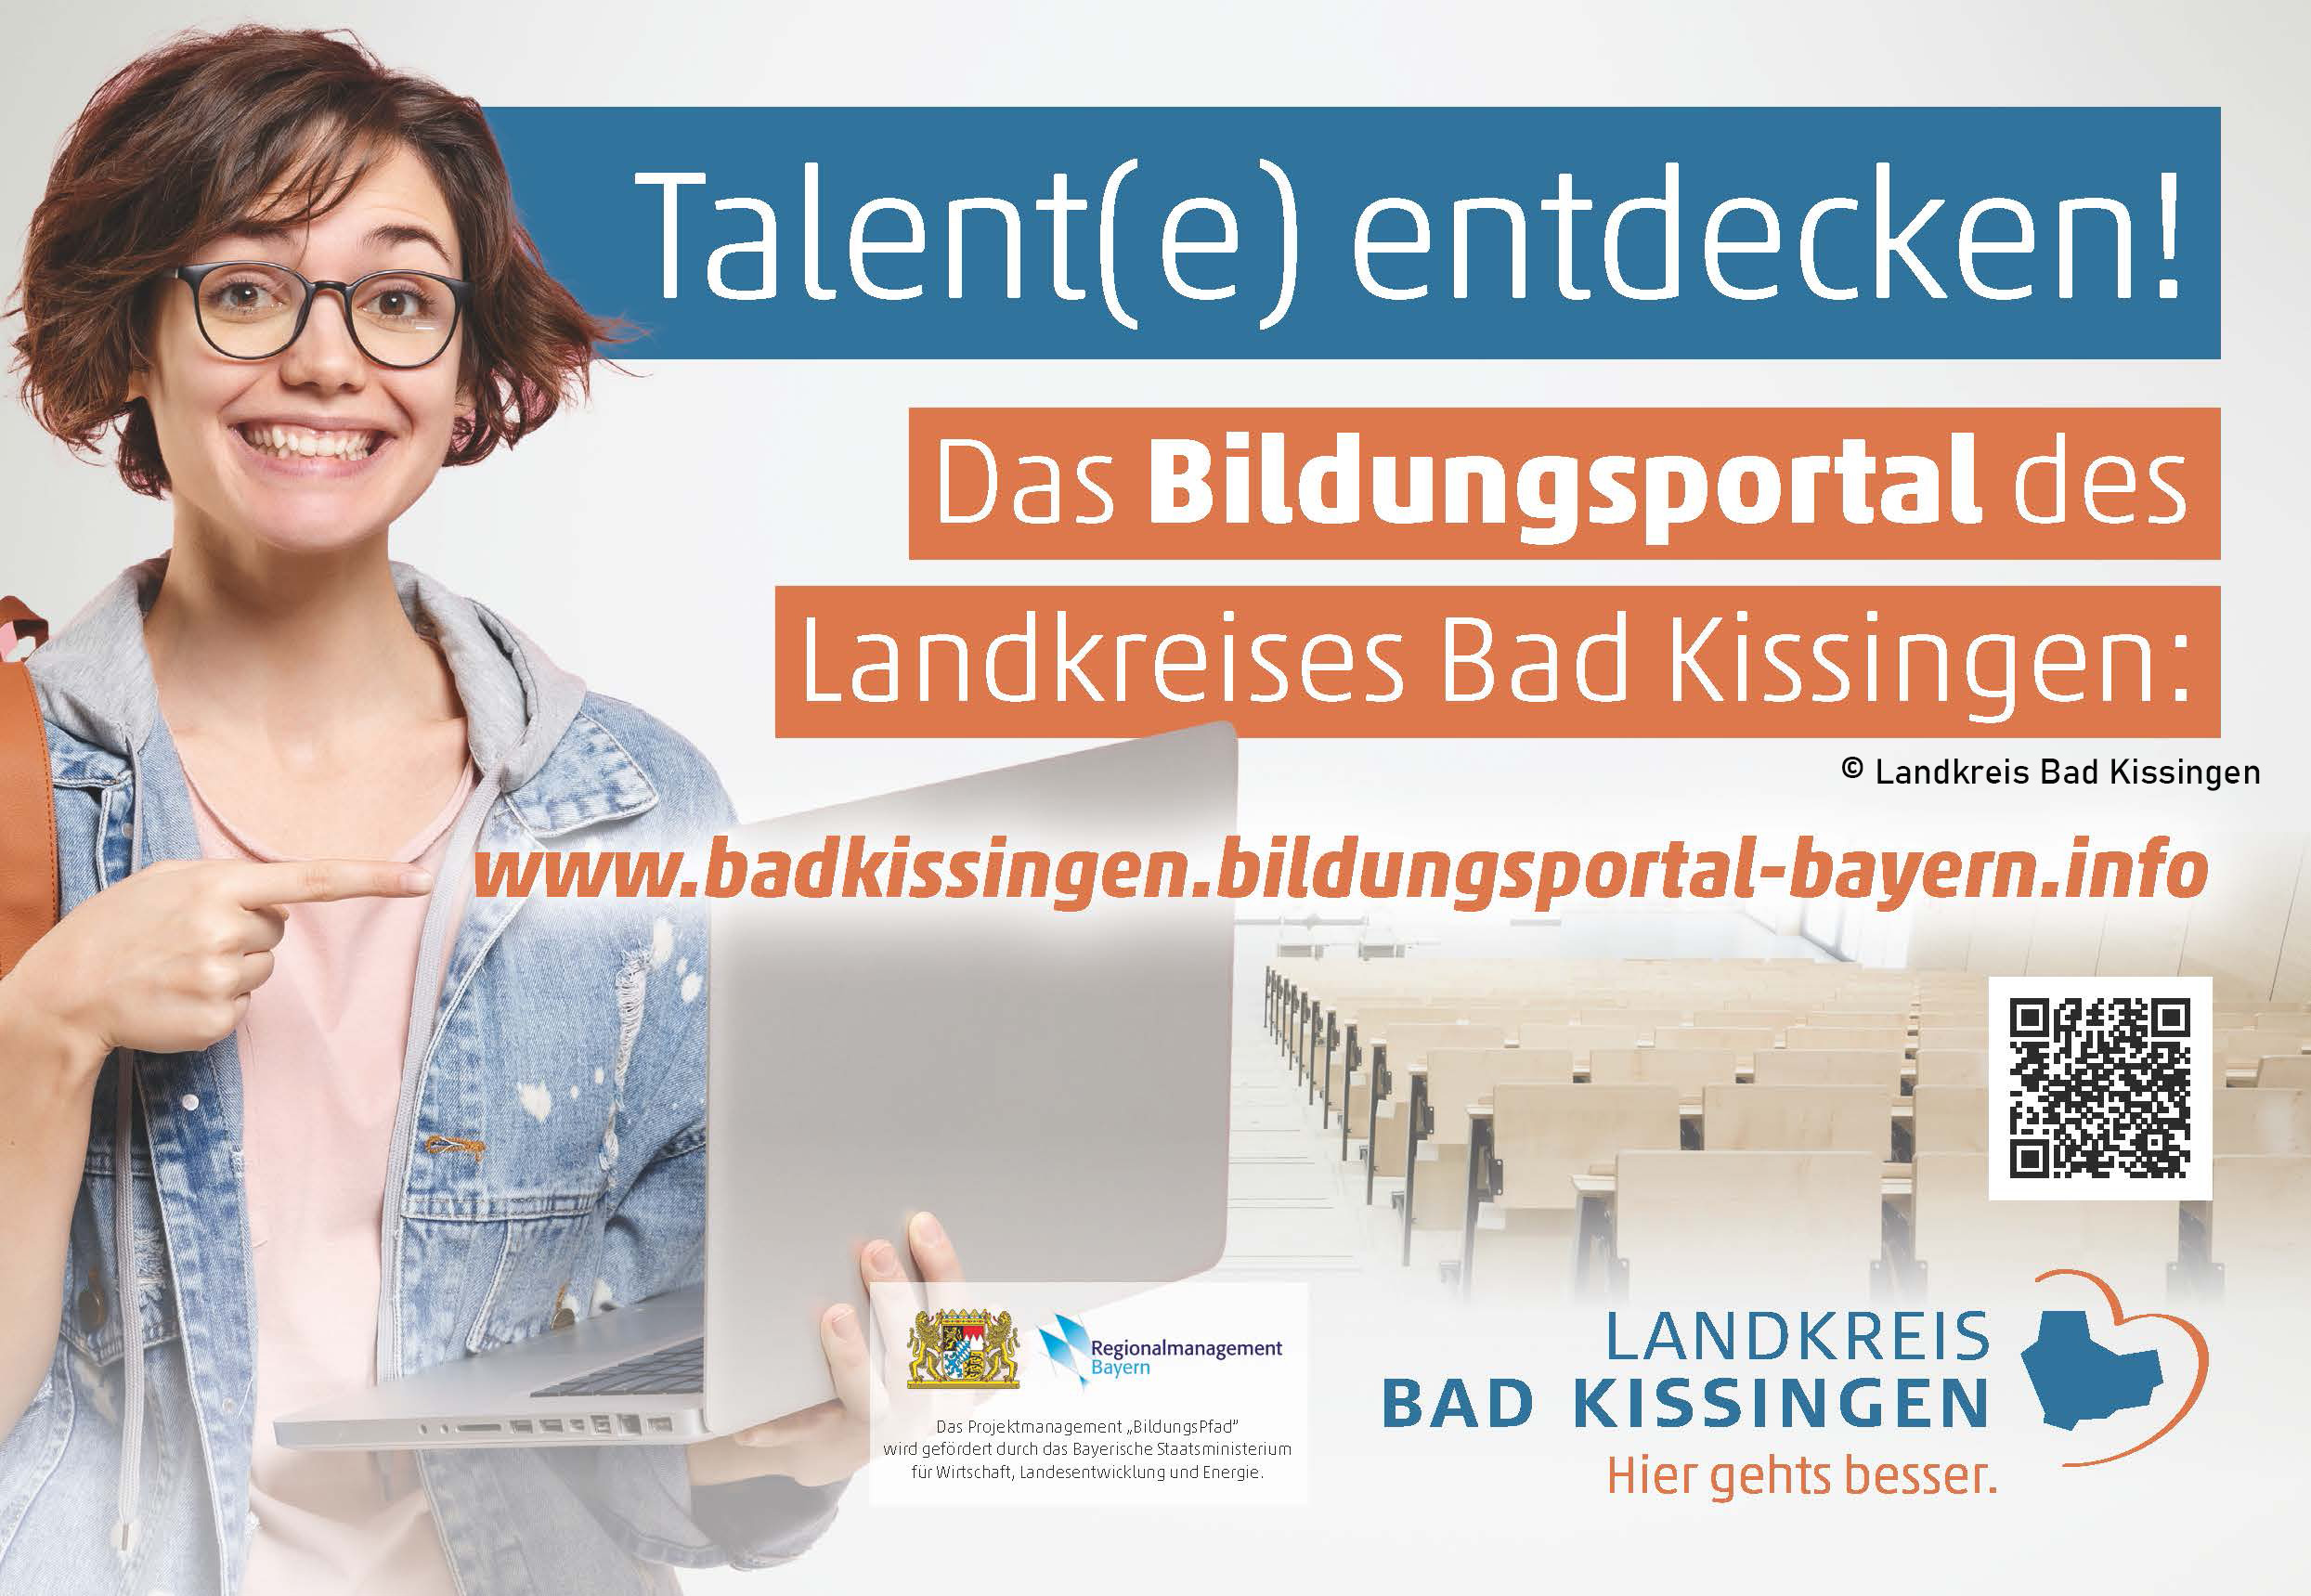 Werbefoto des Landkreis Bad Kissingen. Darauf steht: "Talent(e) entdecken! Das Bildungsportal des Landkreises Bad Kissingen: www.badkissingen.bildungsportal-bayern.info"